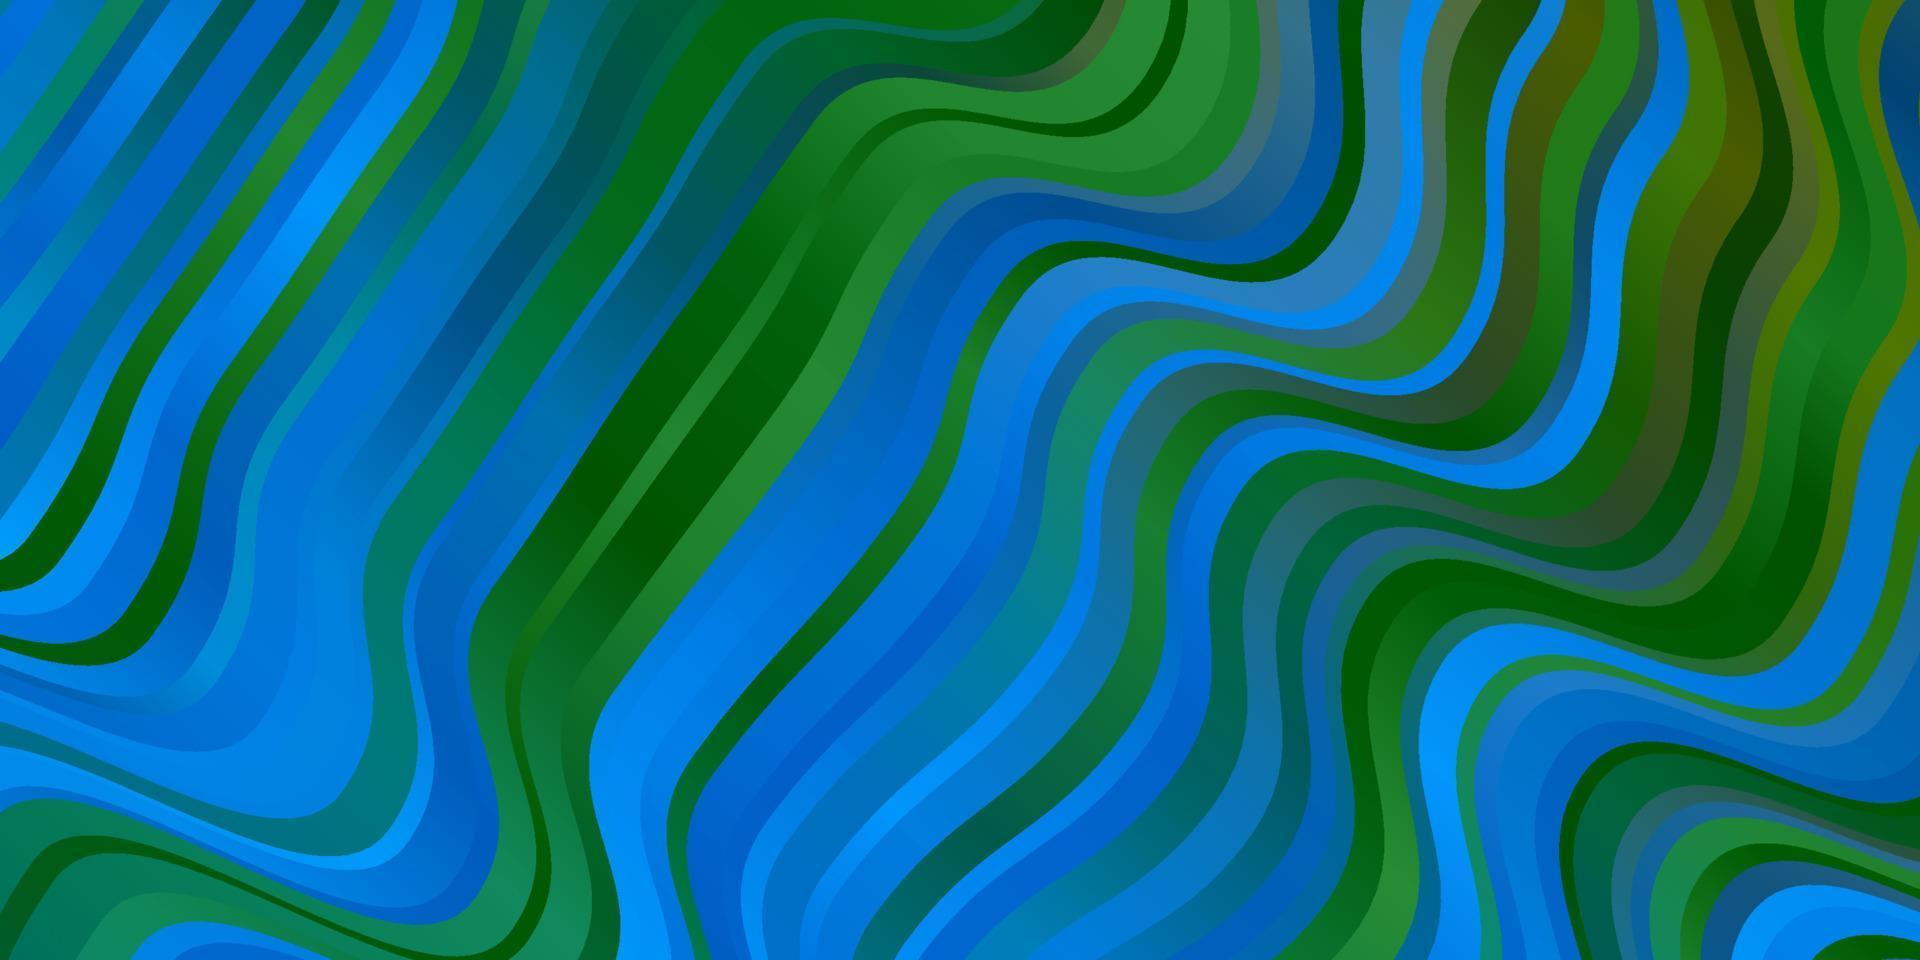 Fondo de vector azul claro, verde con líneas.